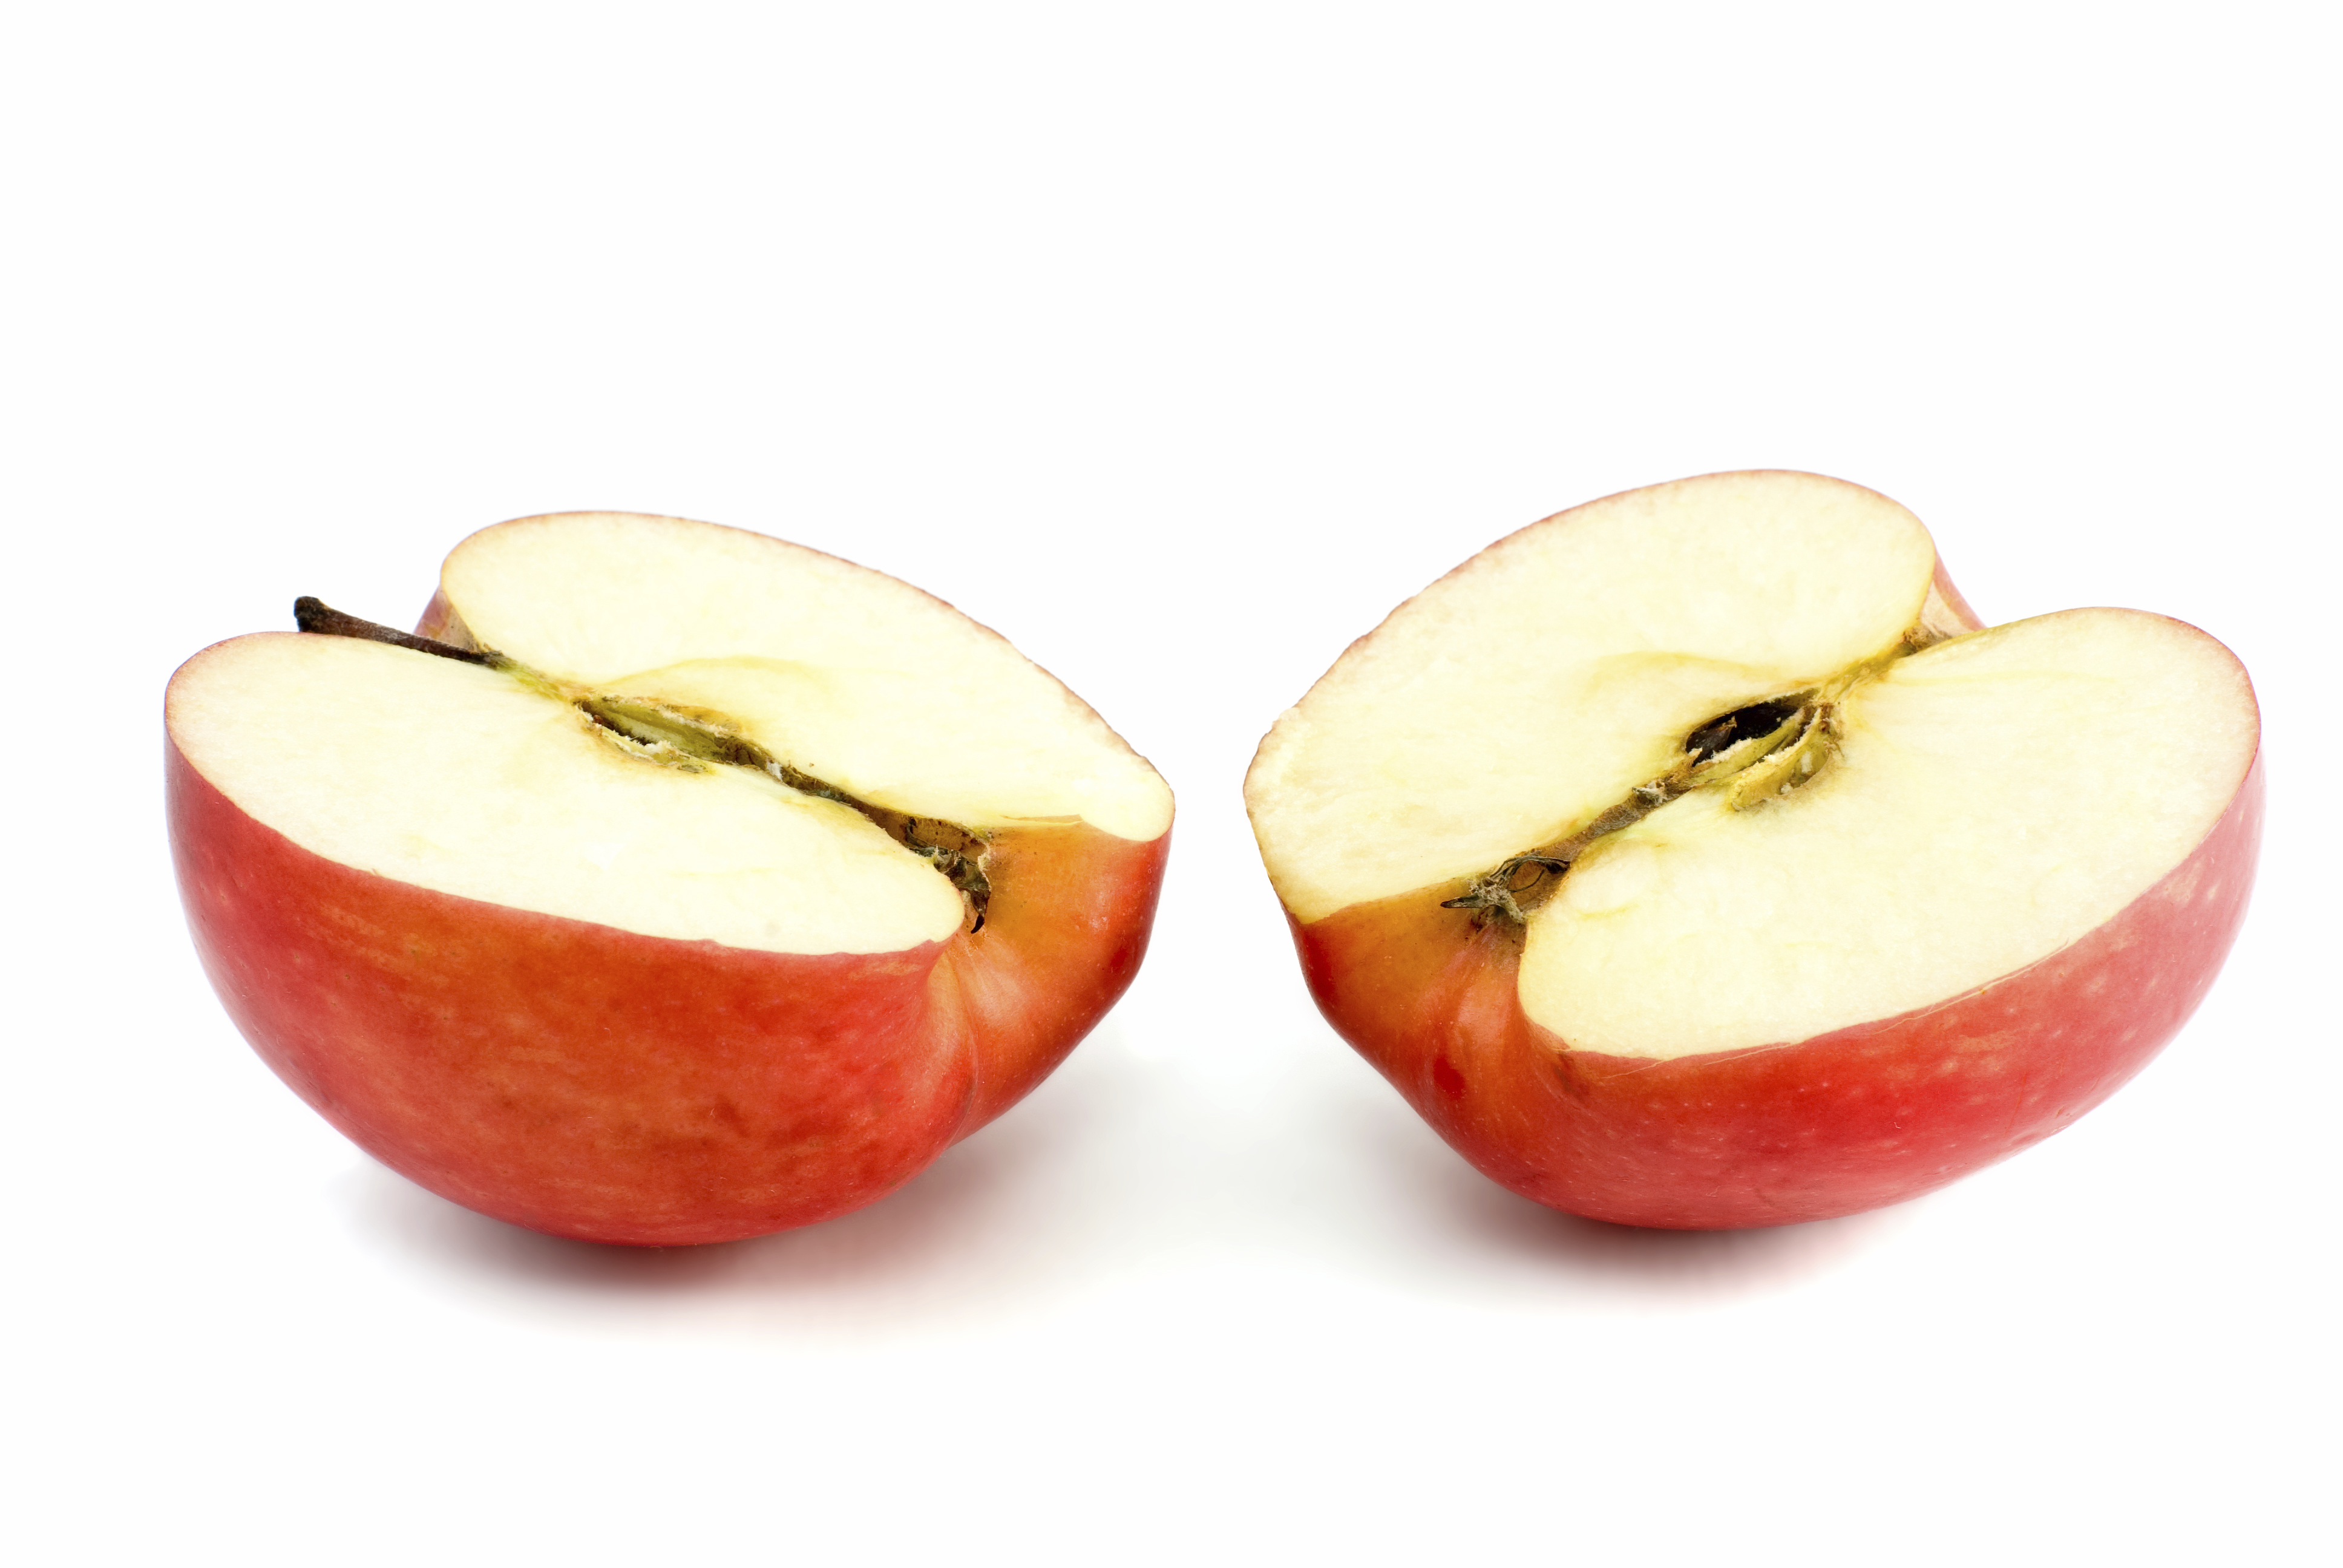 Половинка есть у яблока. Половинка яблока. Яблоко разрезанное пополам. Две половины яблока. Две половинки яблока.